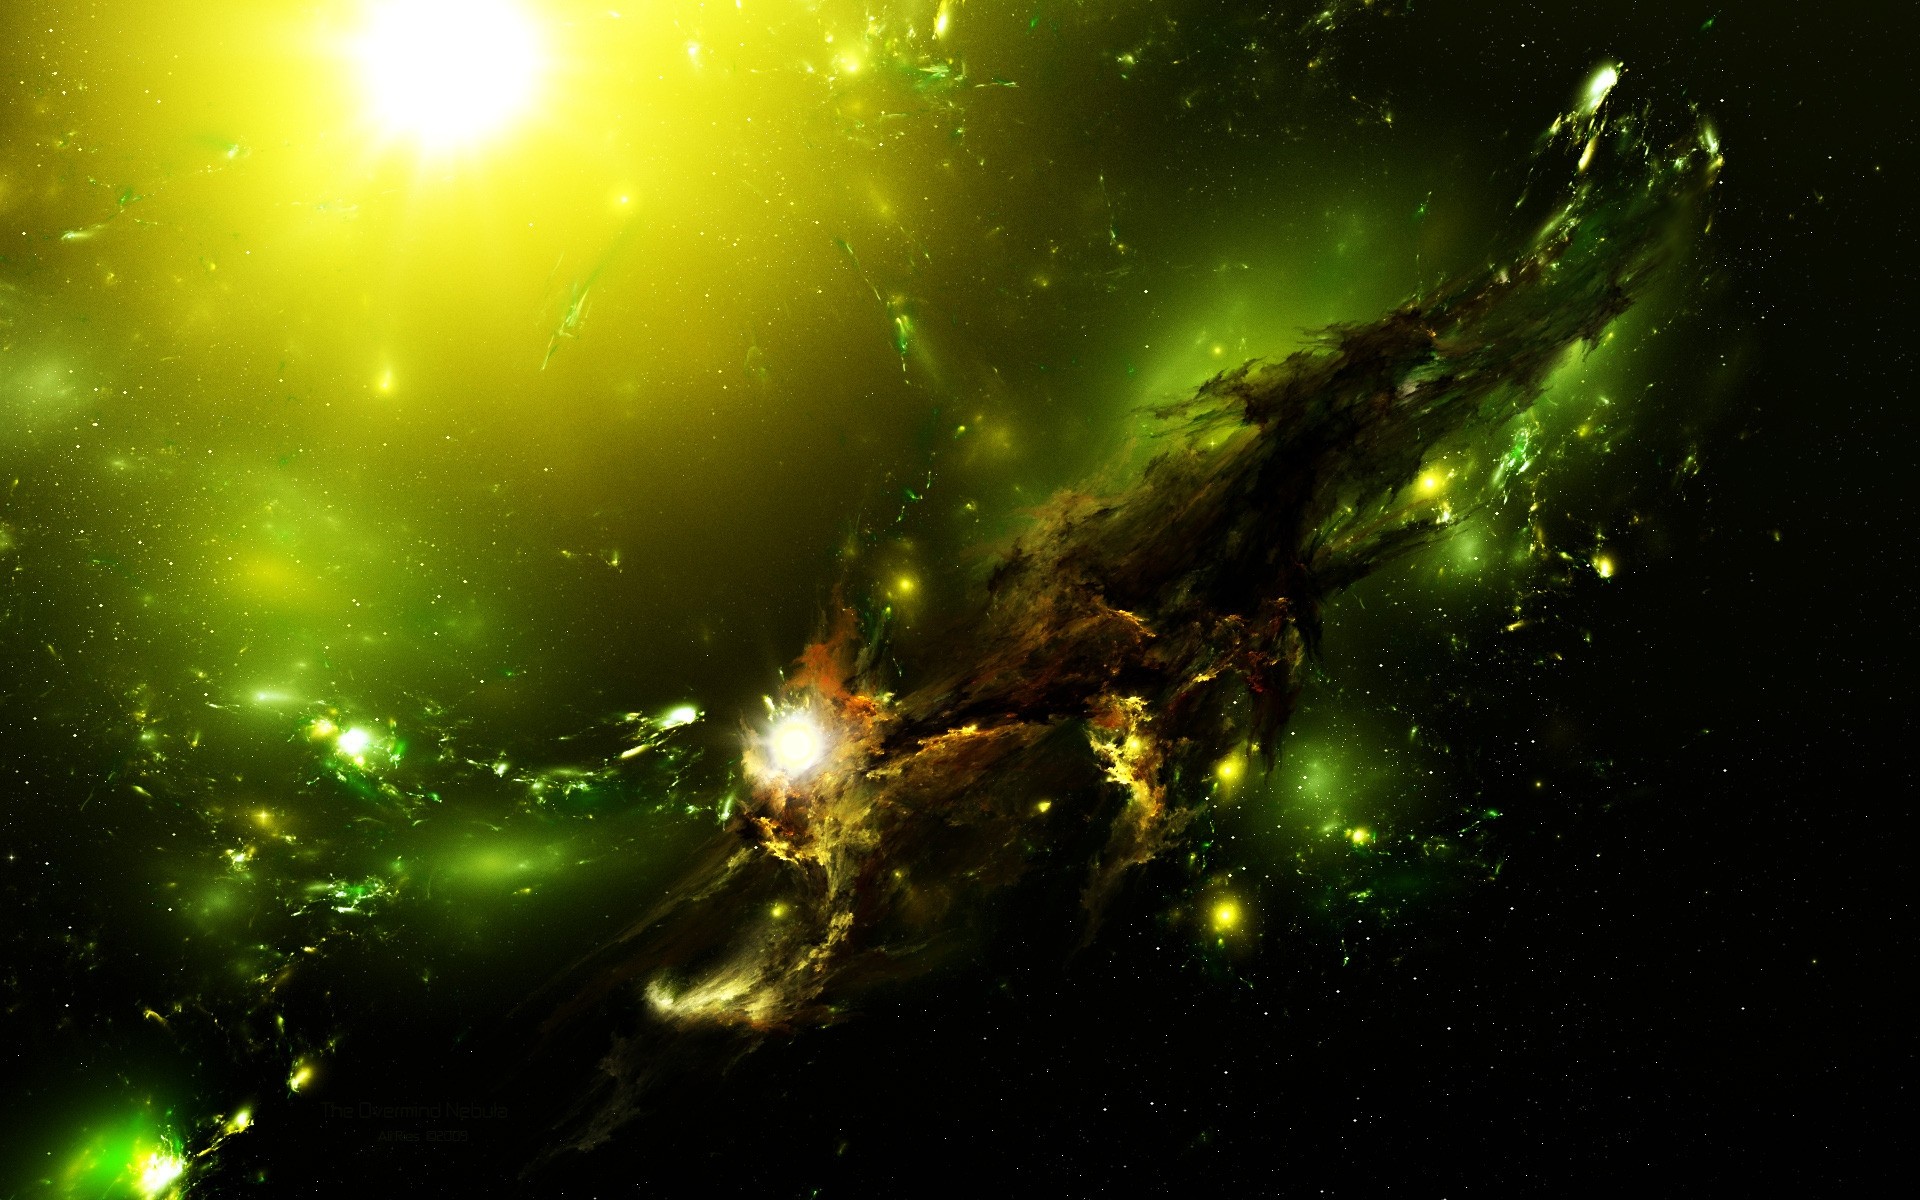 космос фантазия астрономия свет аннотация сюрреалистично светит галактика яркий космос искусство энергии рабочего стола футуристический рождество луна создание цвет иллюстрация